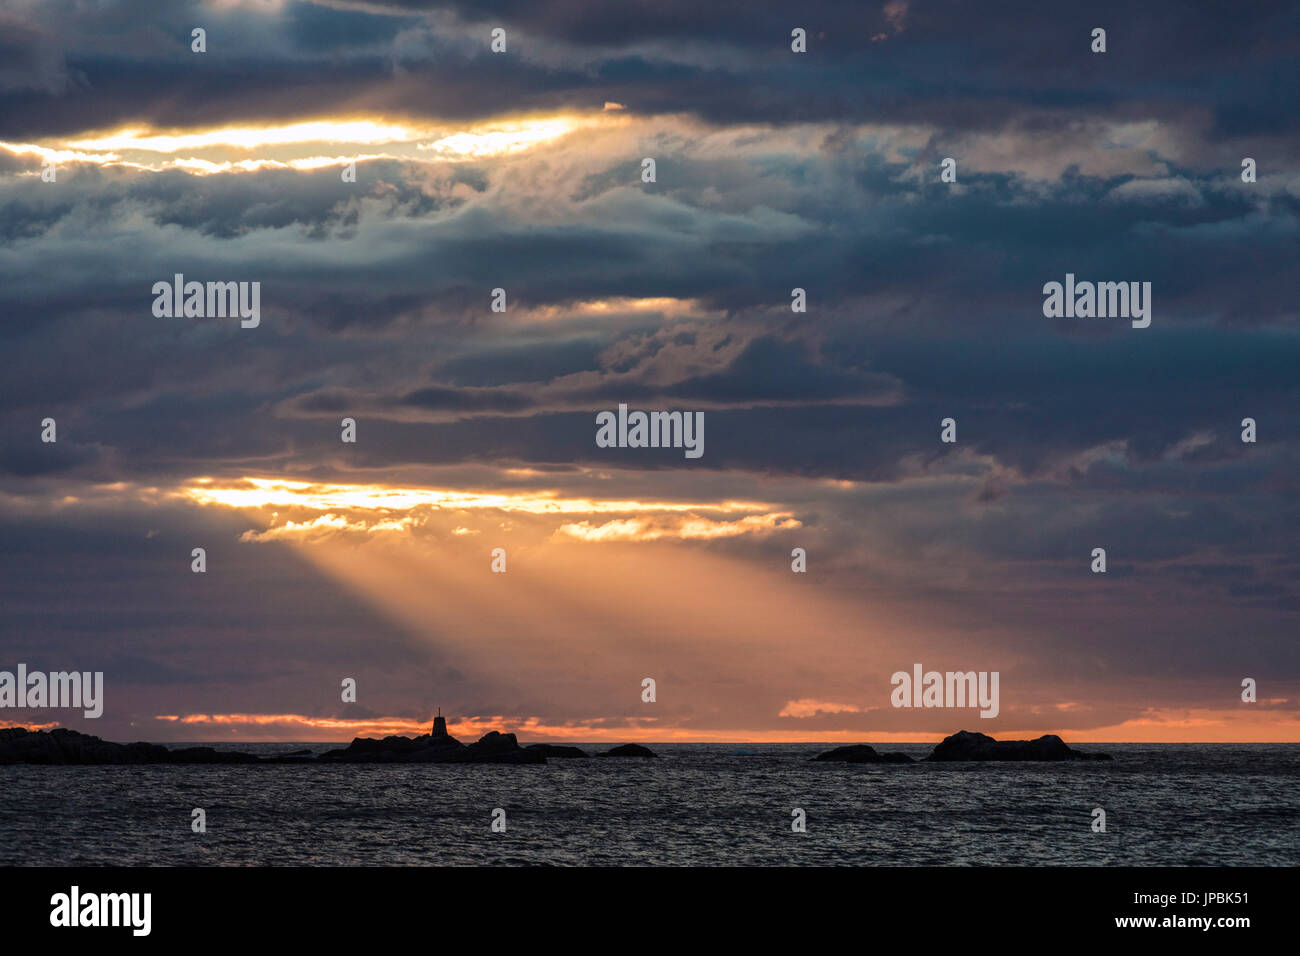 Rayons de soleil de minuit s'allumer le phare surplombant la mer Eggum Lofoten, Norvège Europe Vestvagøy Banque D'Images